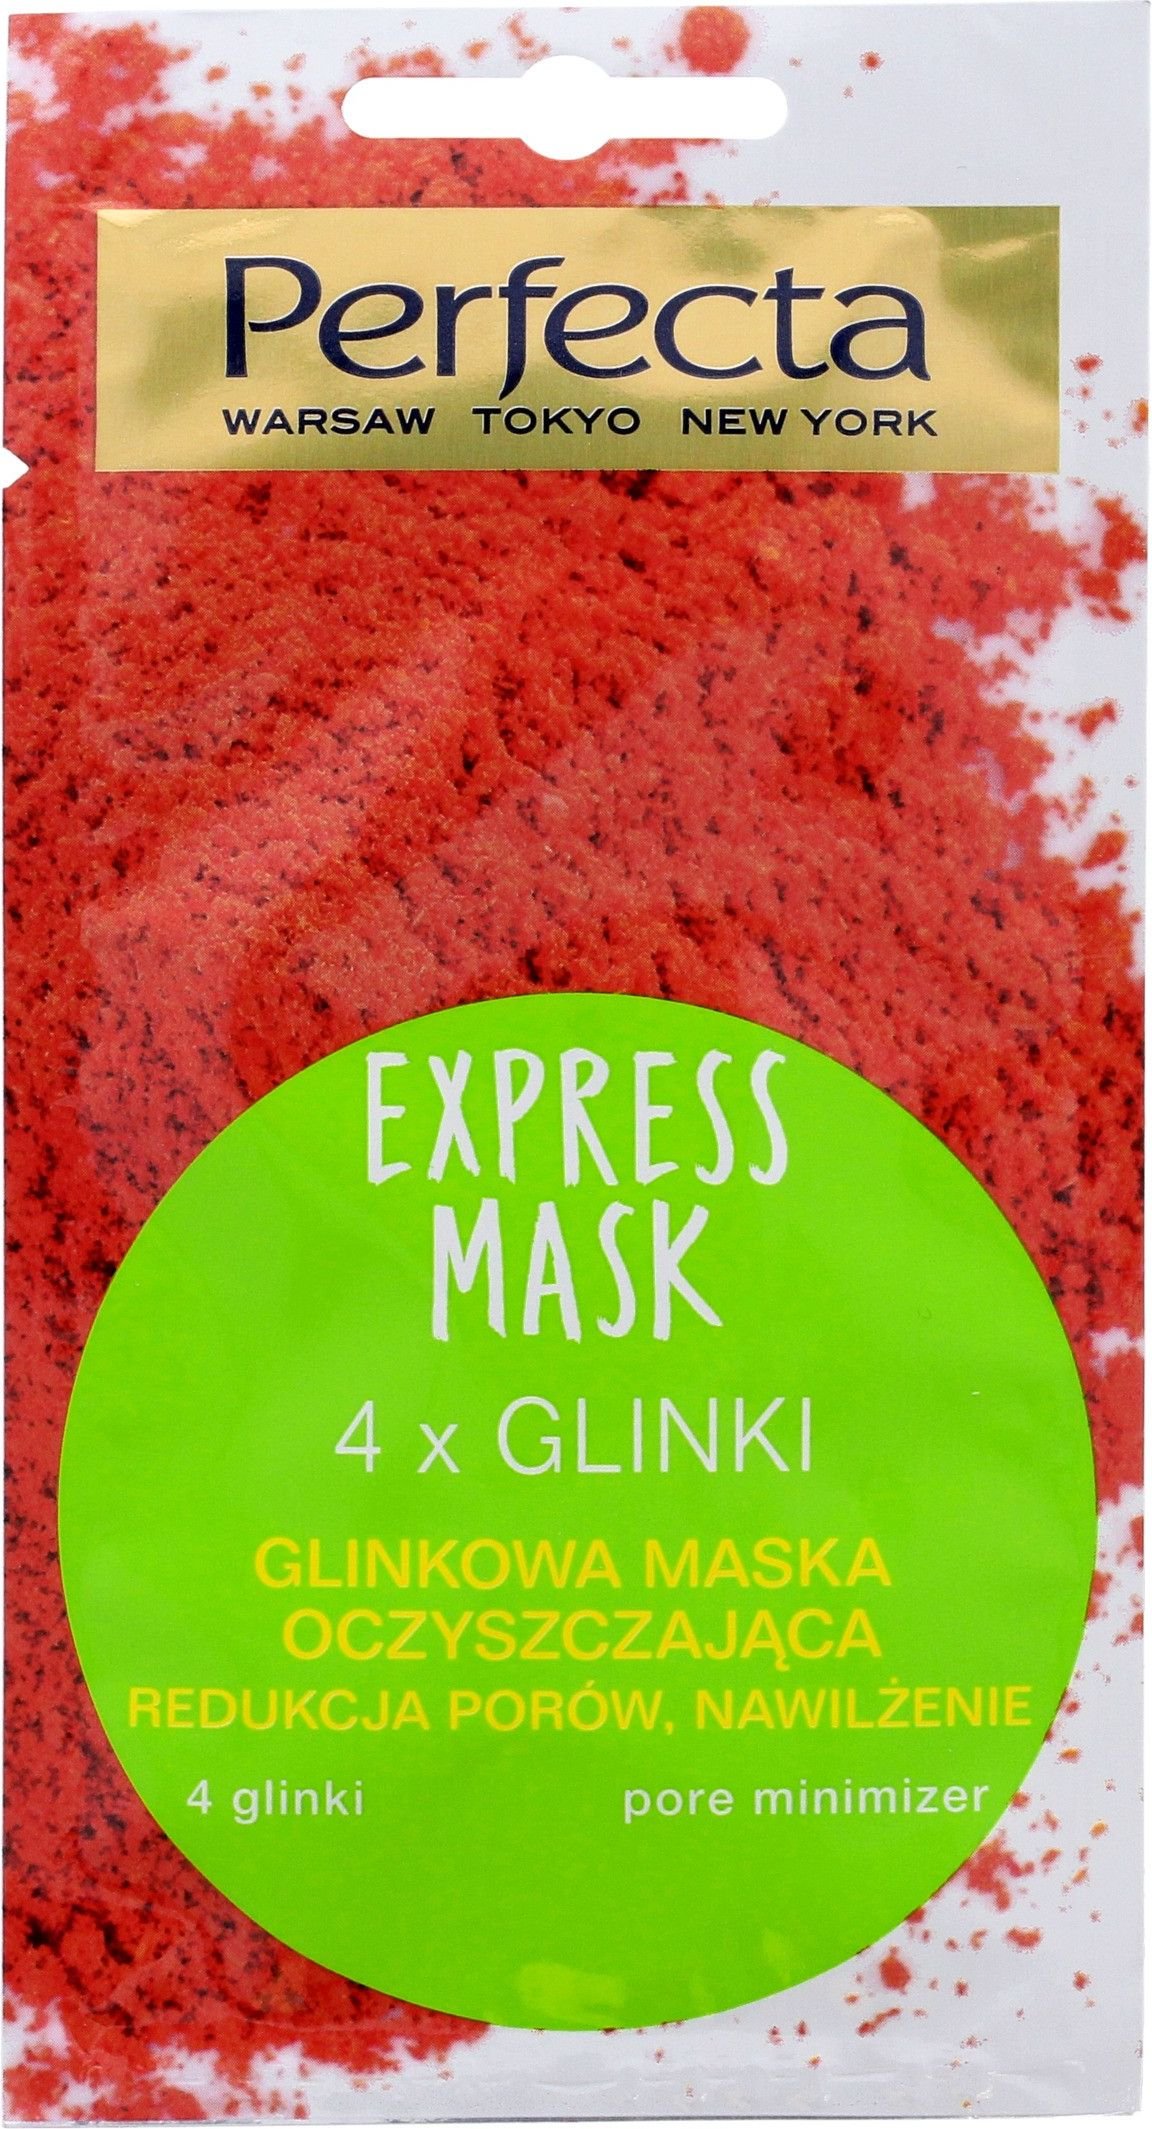 Perfecta Express Mask Glinkowa Maska oczyszczająca - 4 Glinki 8ml